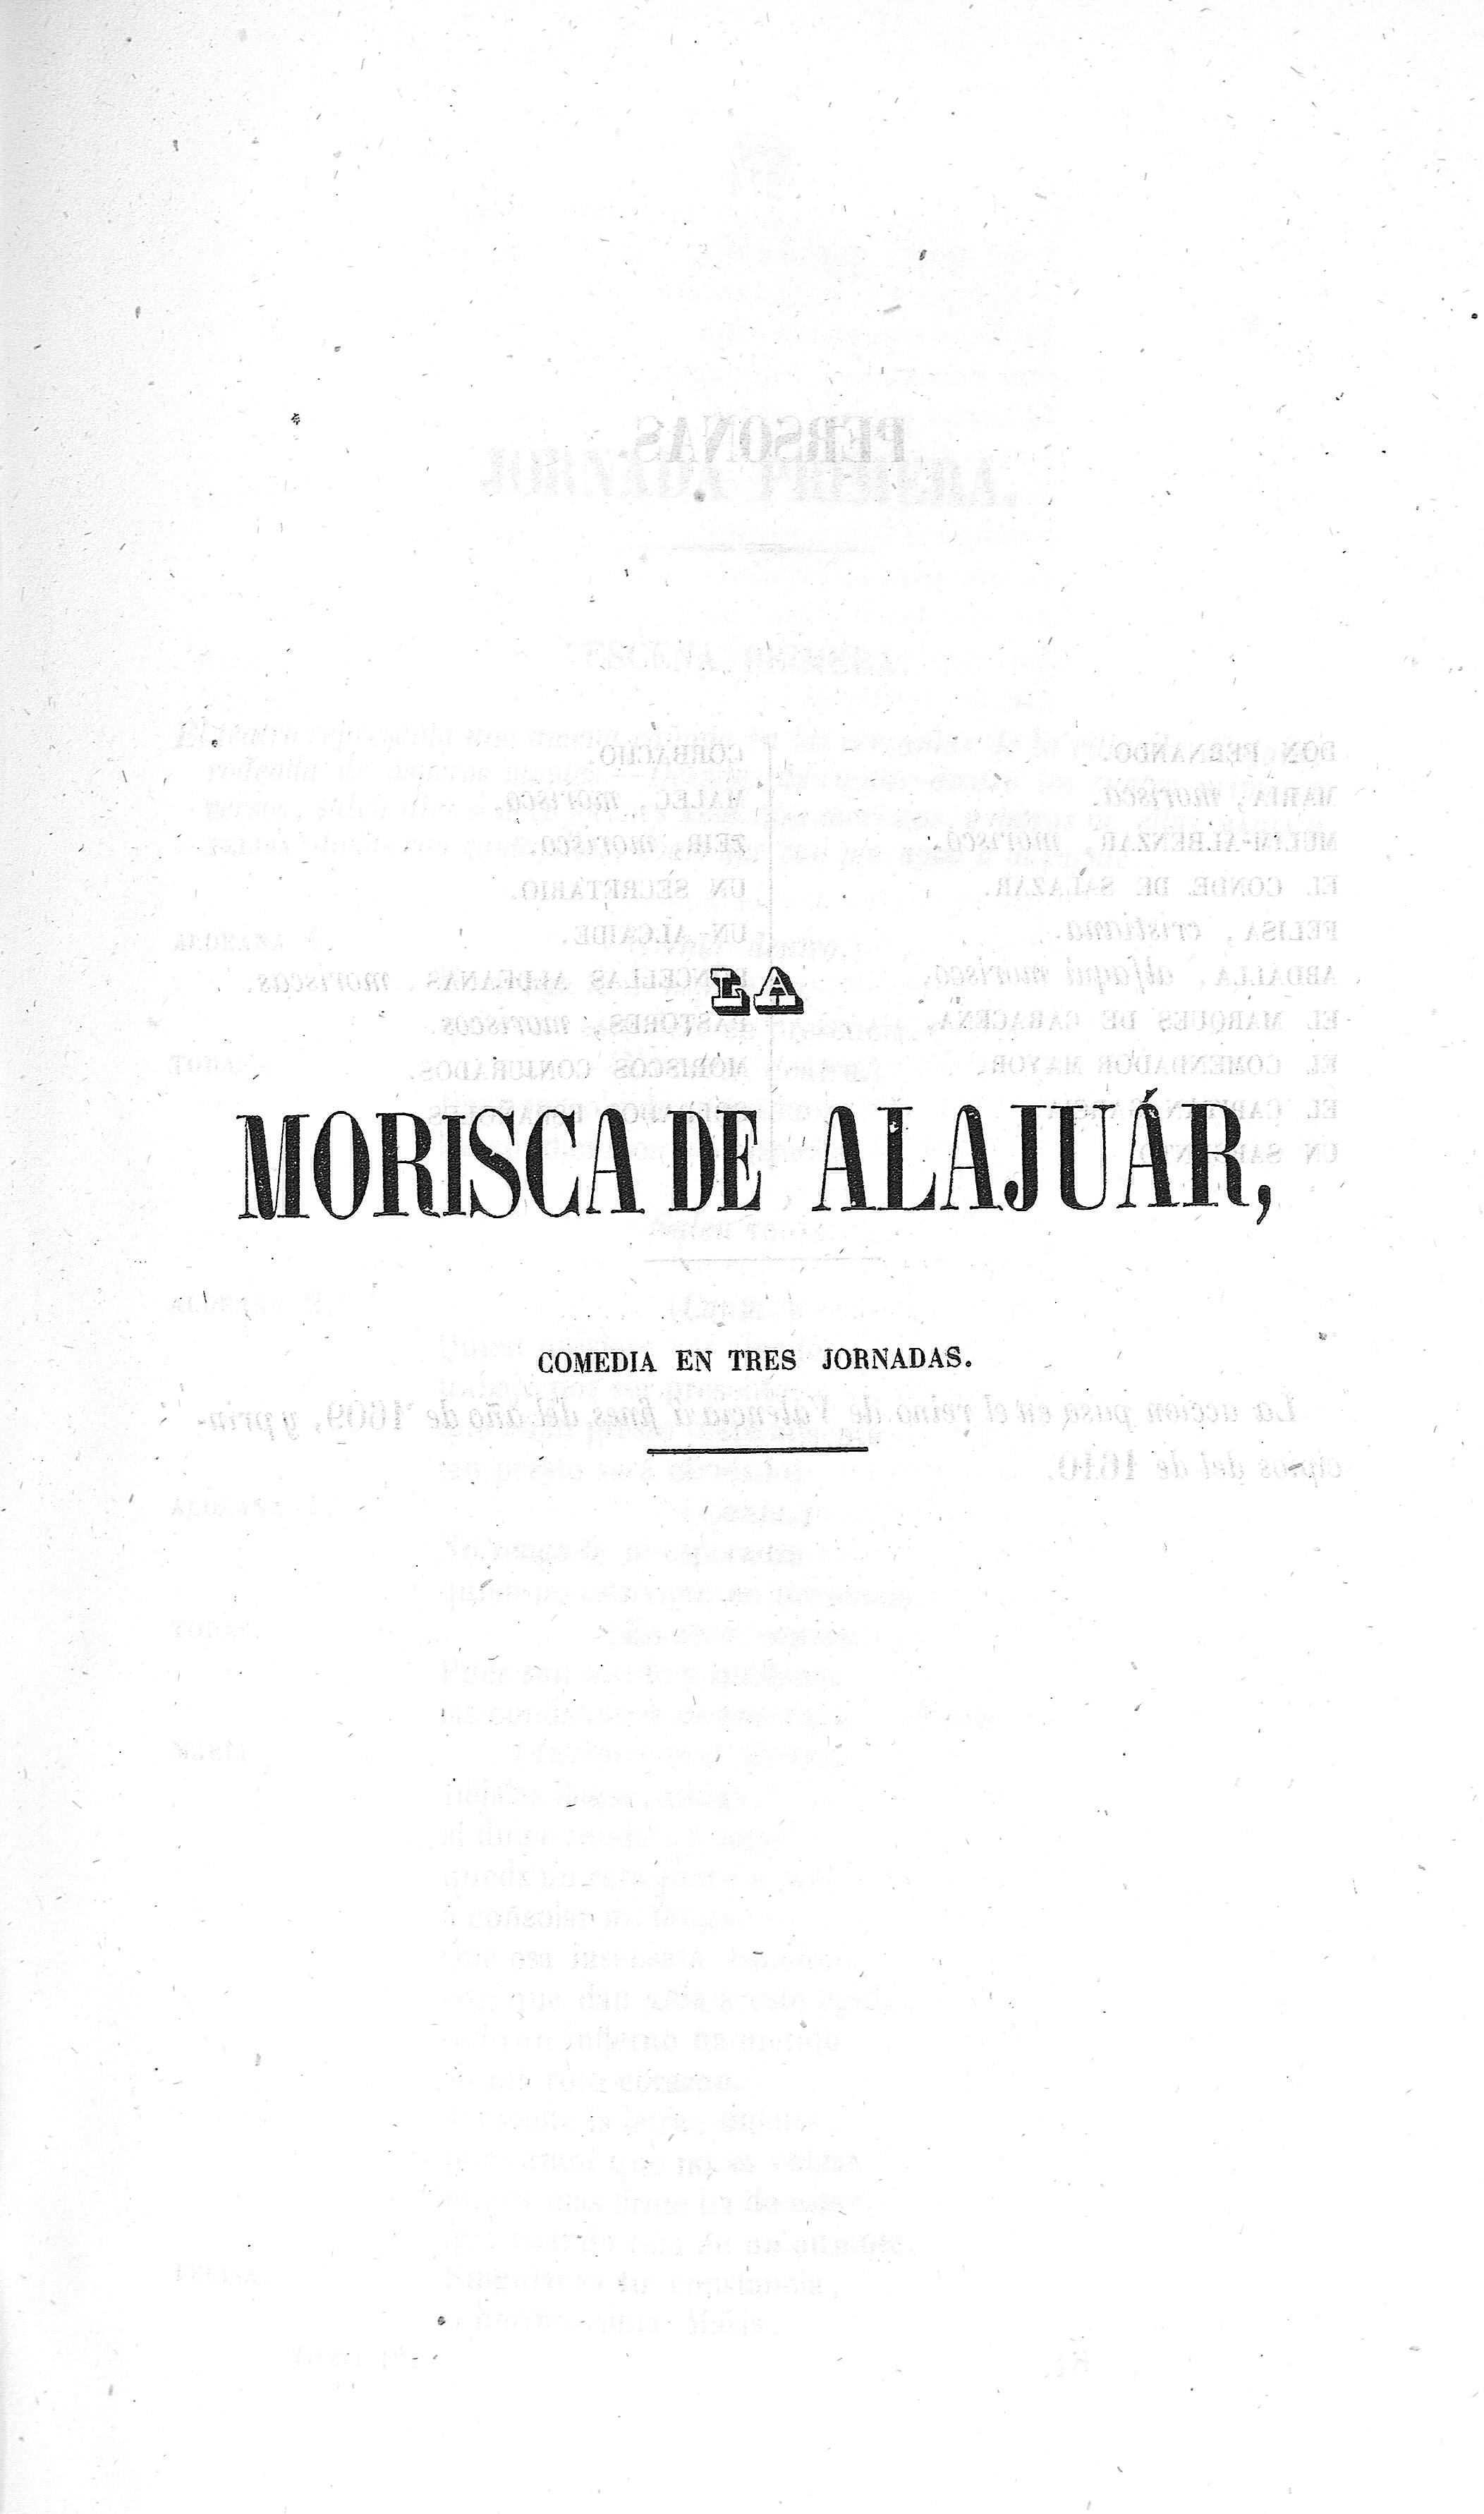 Morisca de Alajuár. Comedia en tres jornadas